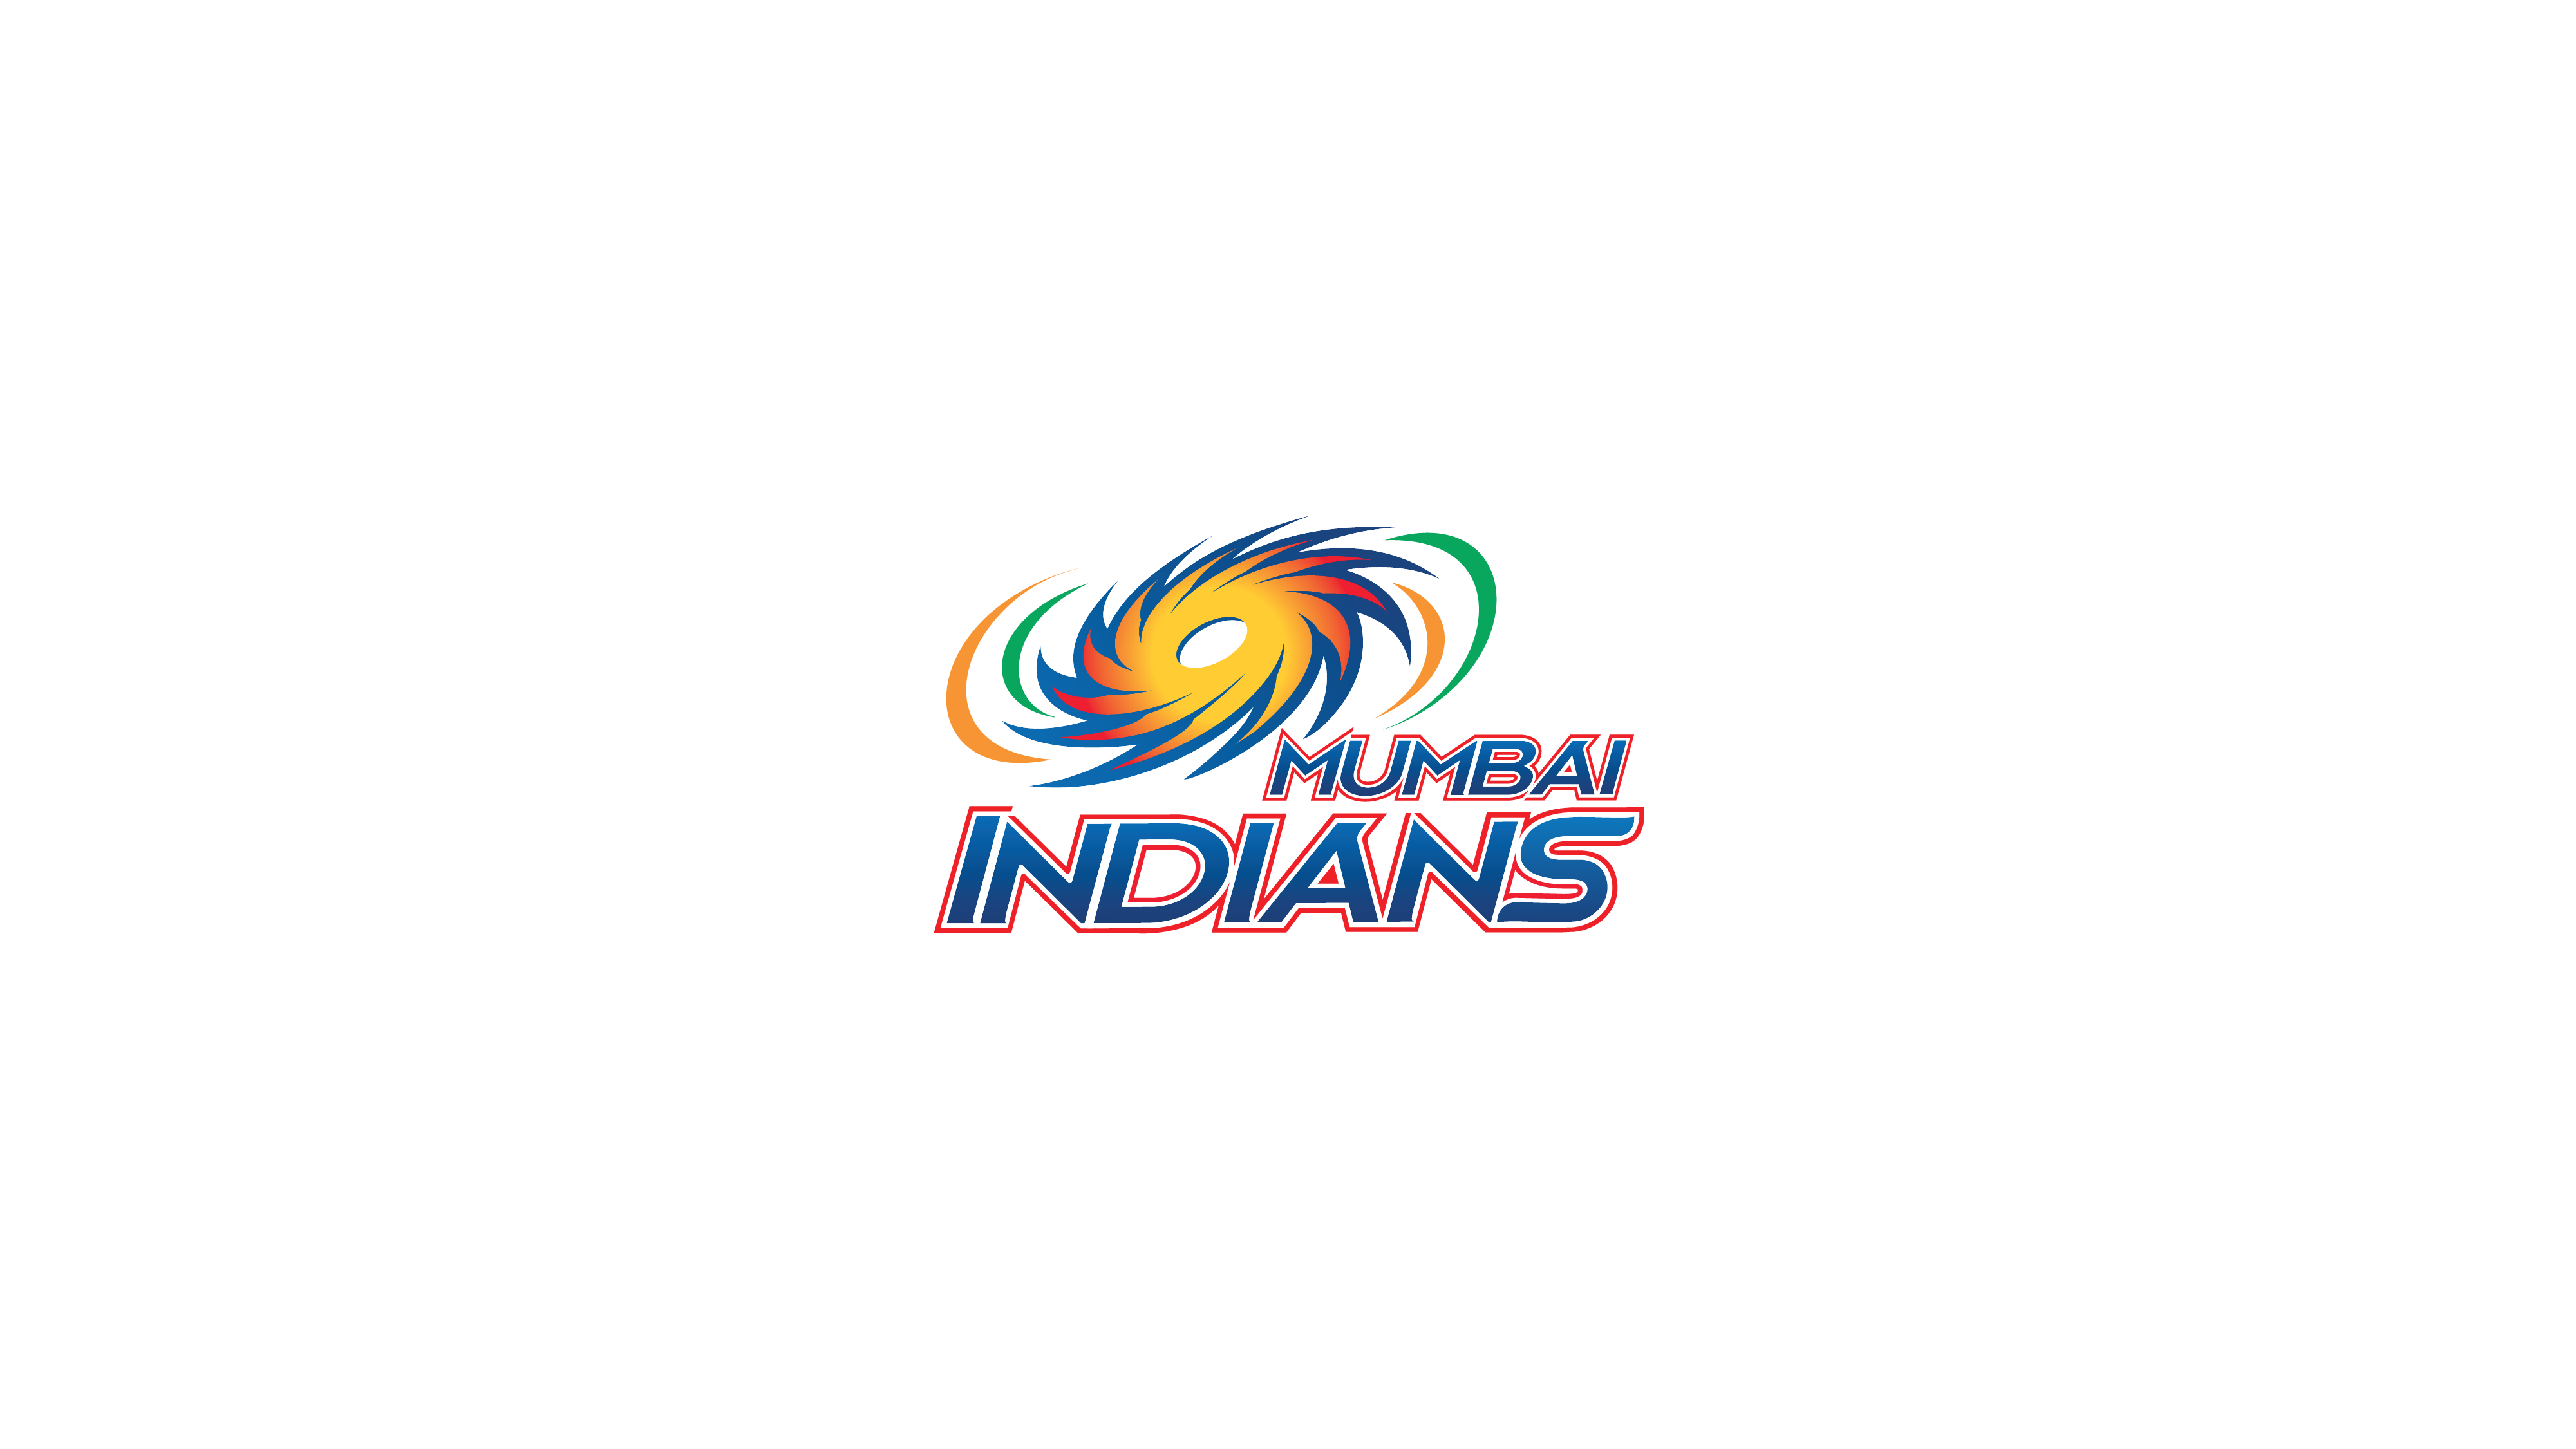 Mumbai Indians adds new cricket franchise 'MI New York'